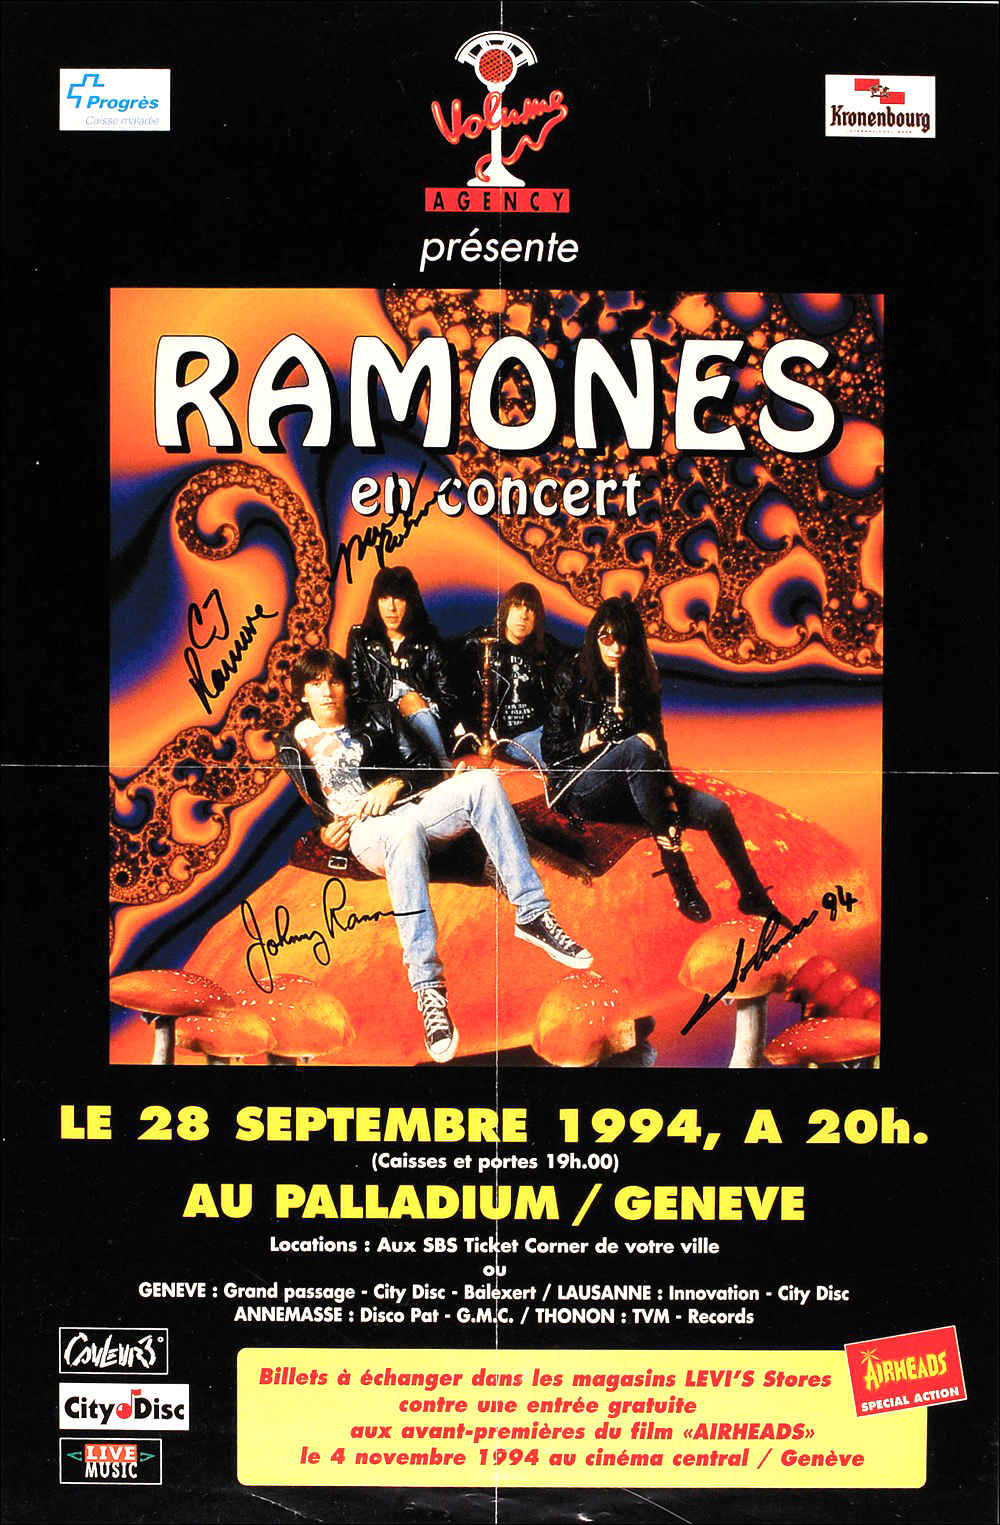 Lot #954 The Ramones